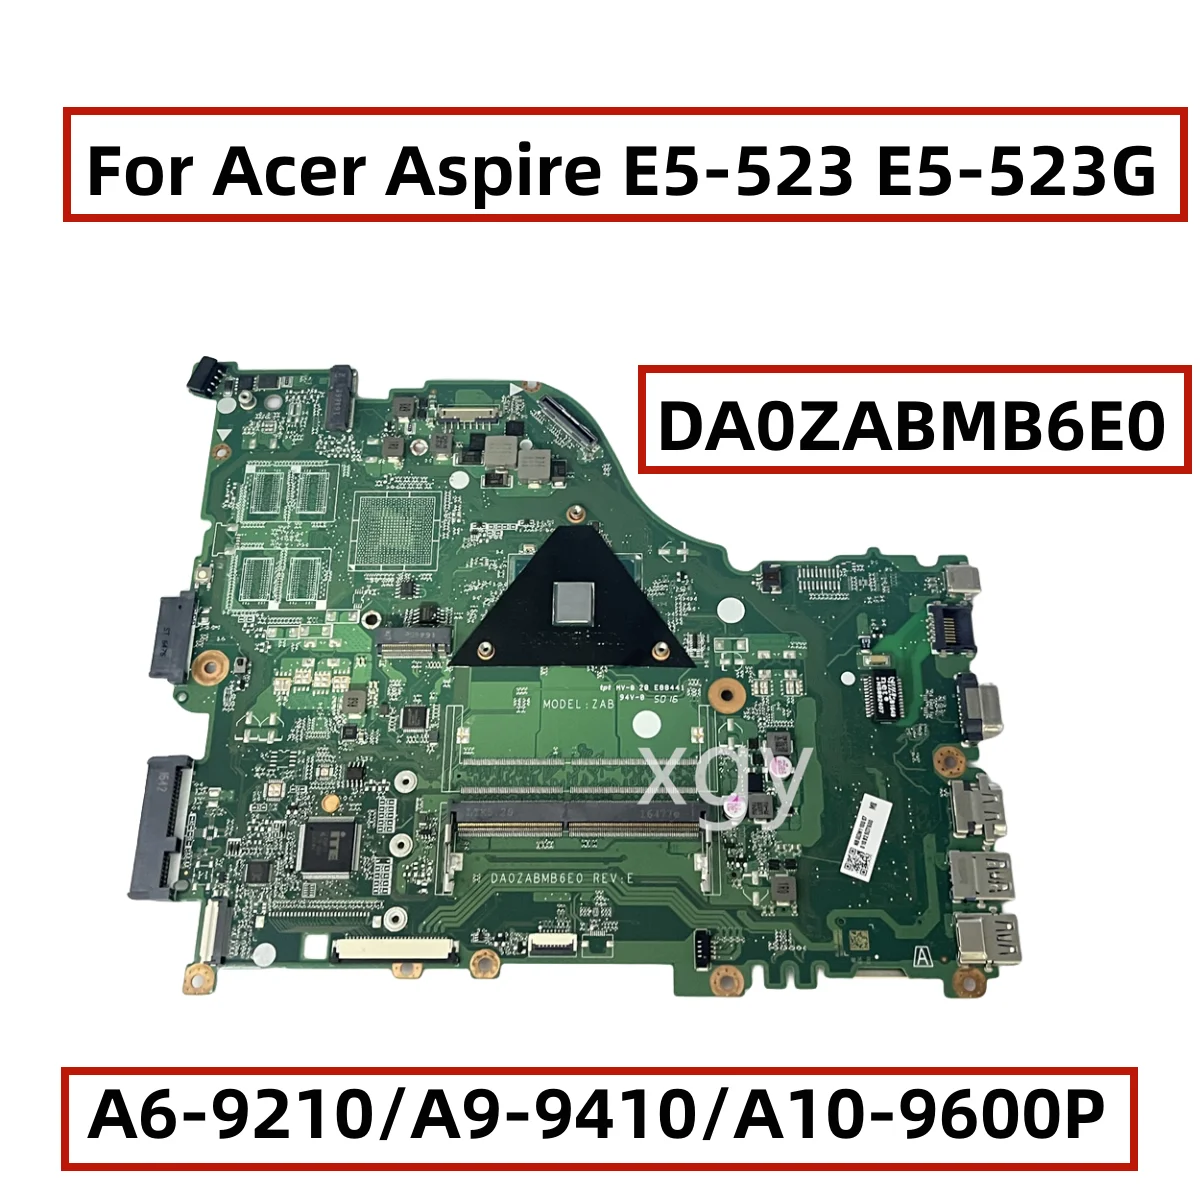 

Original For Acer Aspire E5-523 E5-523G Laptop Motherboard With A6-9210/A9-9410/A10-9600P CPU DA0ZABMB6E0 100% Testing Perfect